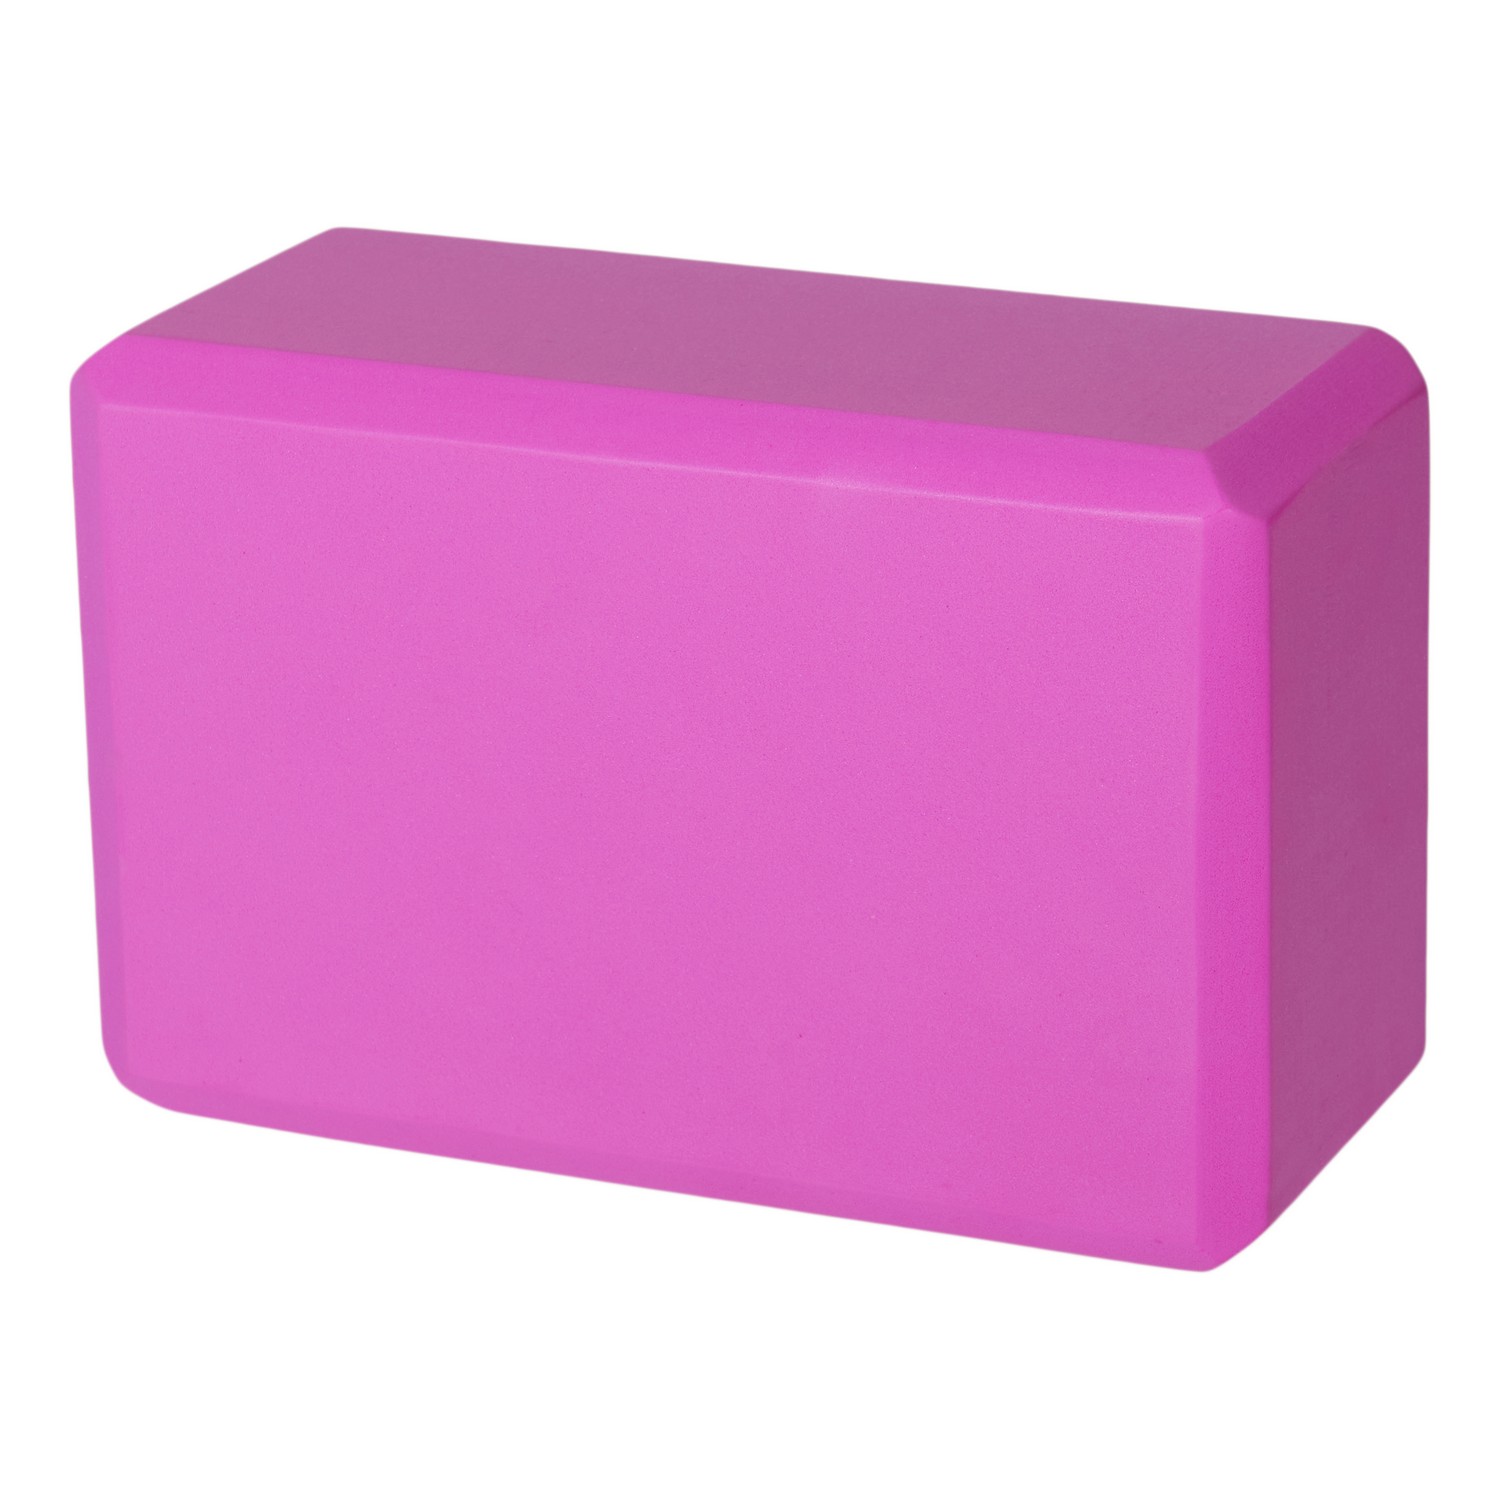 Блок для йоги Inex EVA Yoga Block YGBK-PK 10х15х23 см, розовый 1500_1500